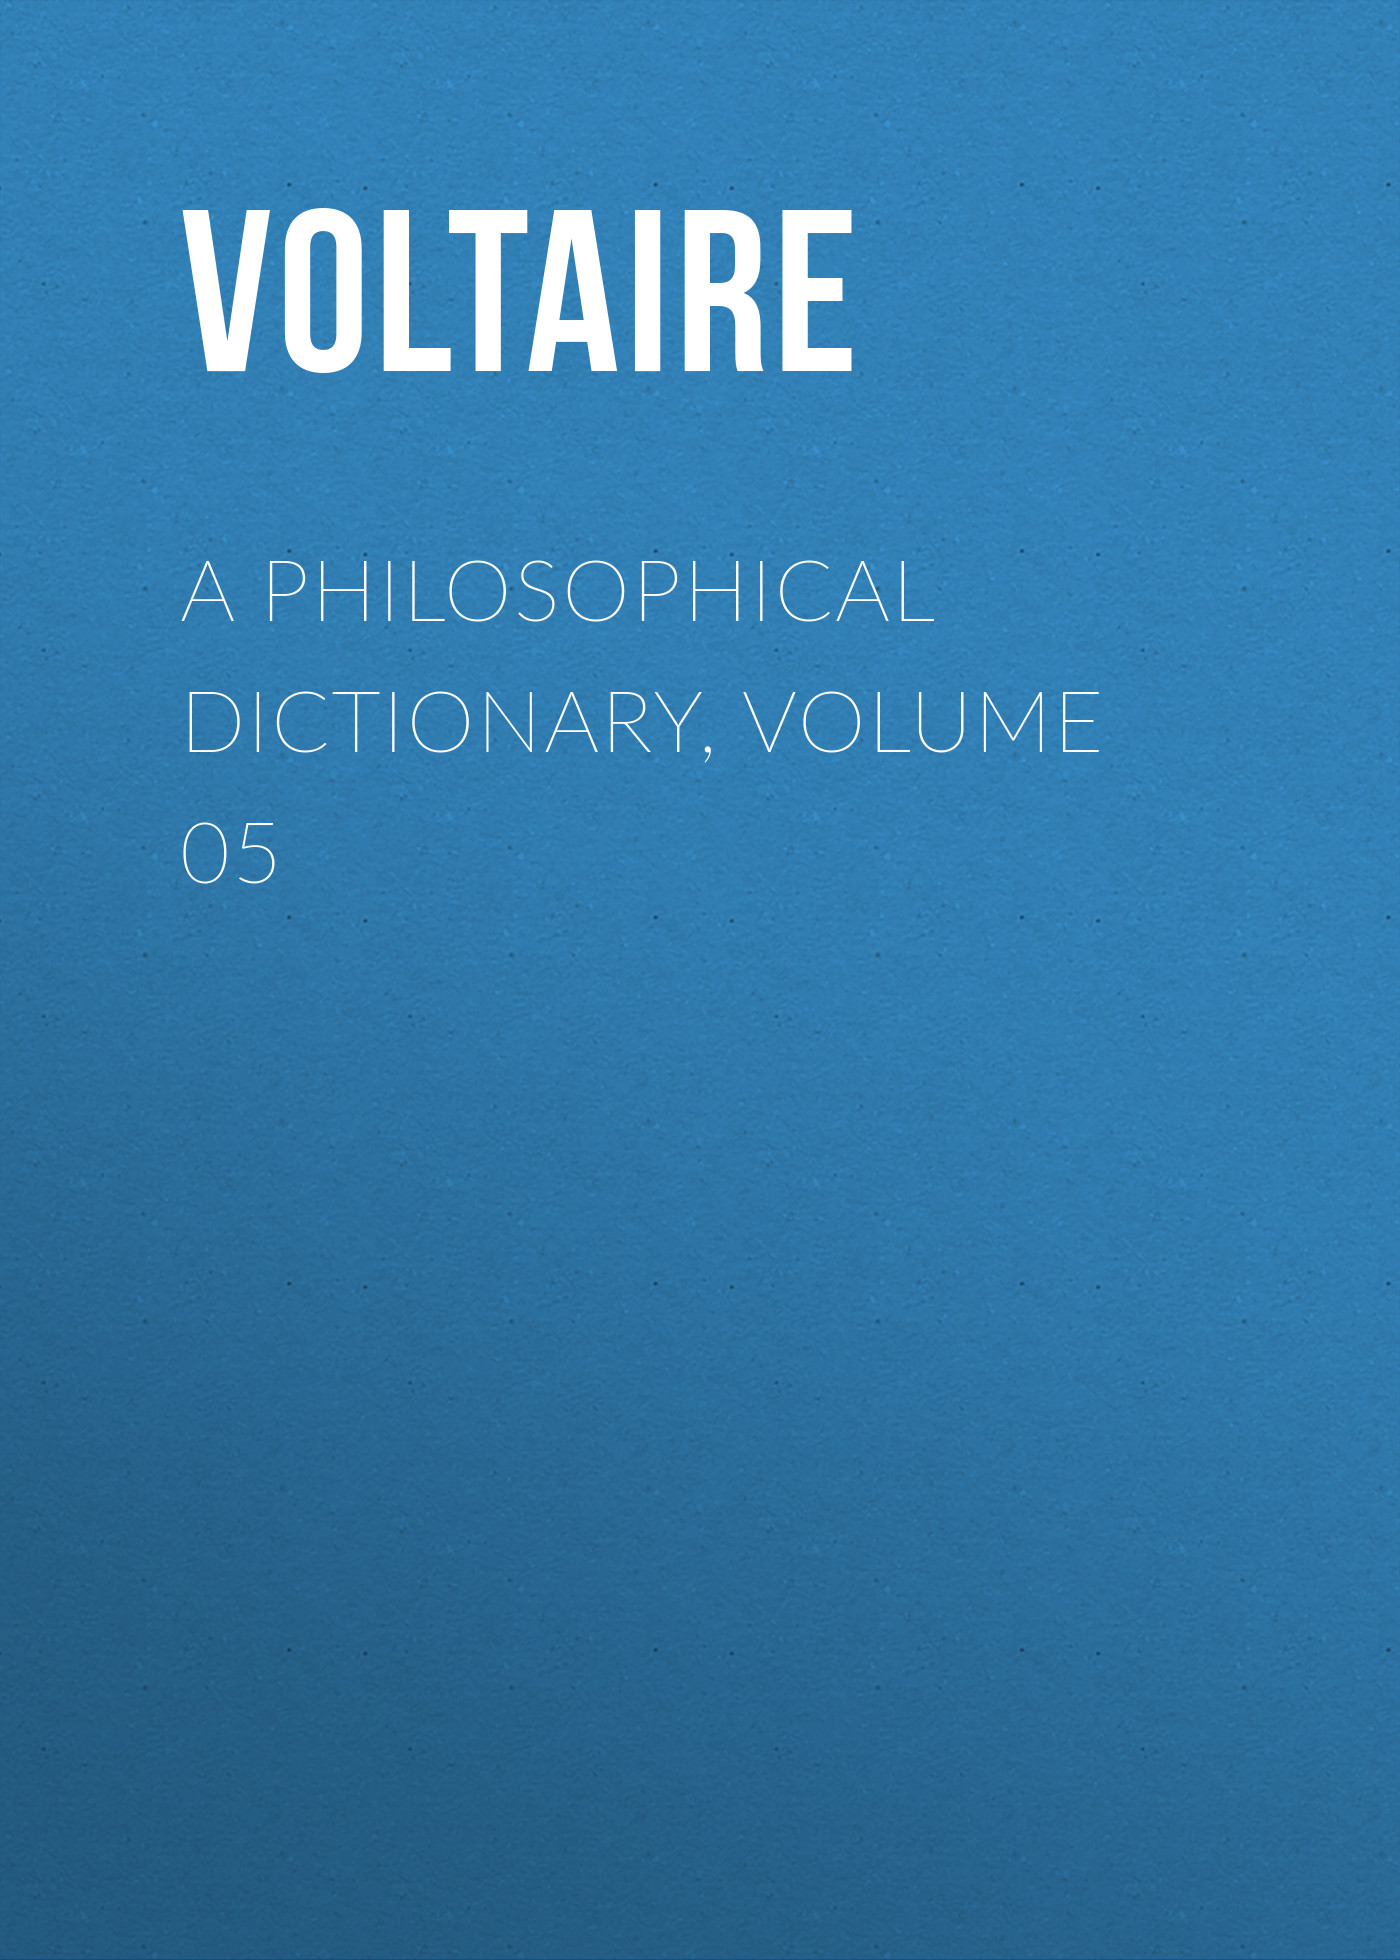 Книга A Philosophical Dictionary, Volume 05 из серии , созданная  Voltaire, может относится к жанру Философия, Литература 18 века, Зарубежная классика. Стоимость электронной книги A Philosophical Dictionary, Volume 05 с идентификатором 25560844 составляет 0 руб.